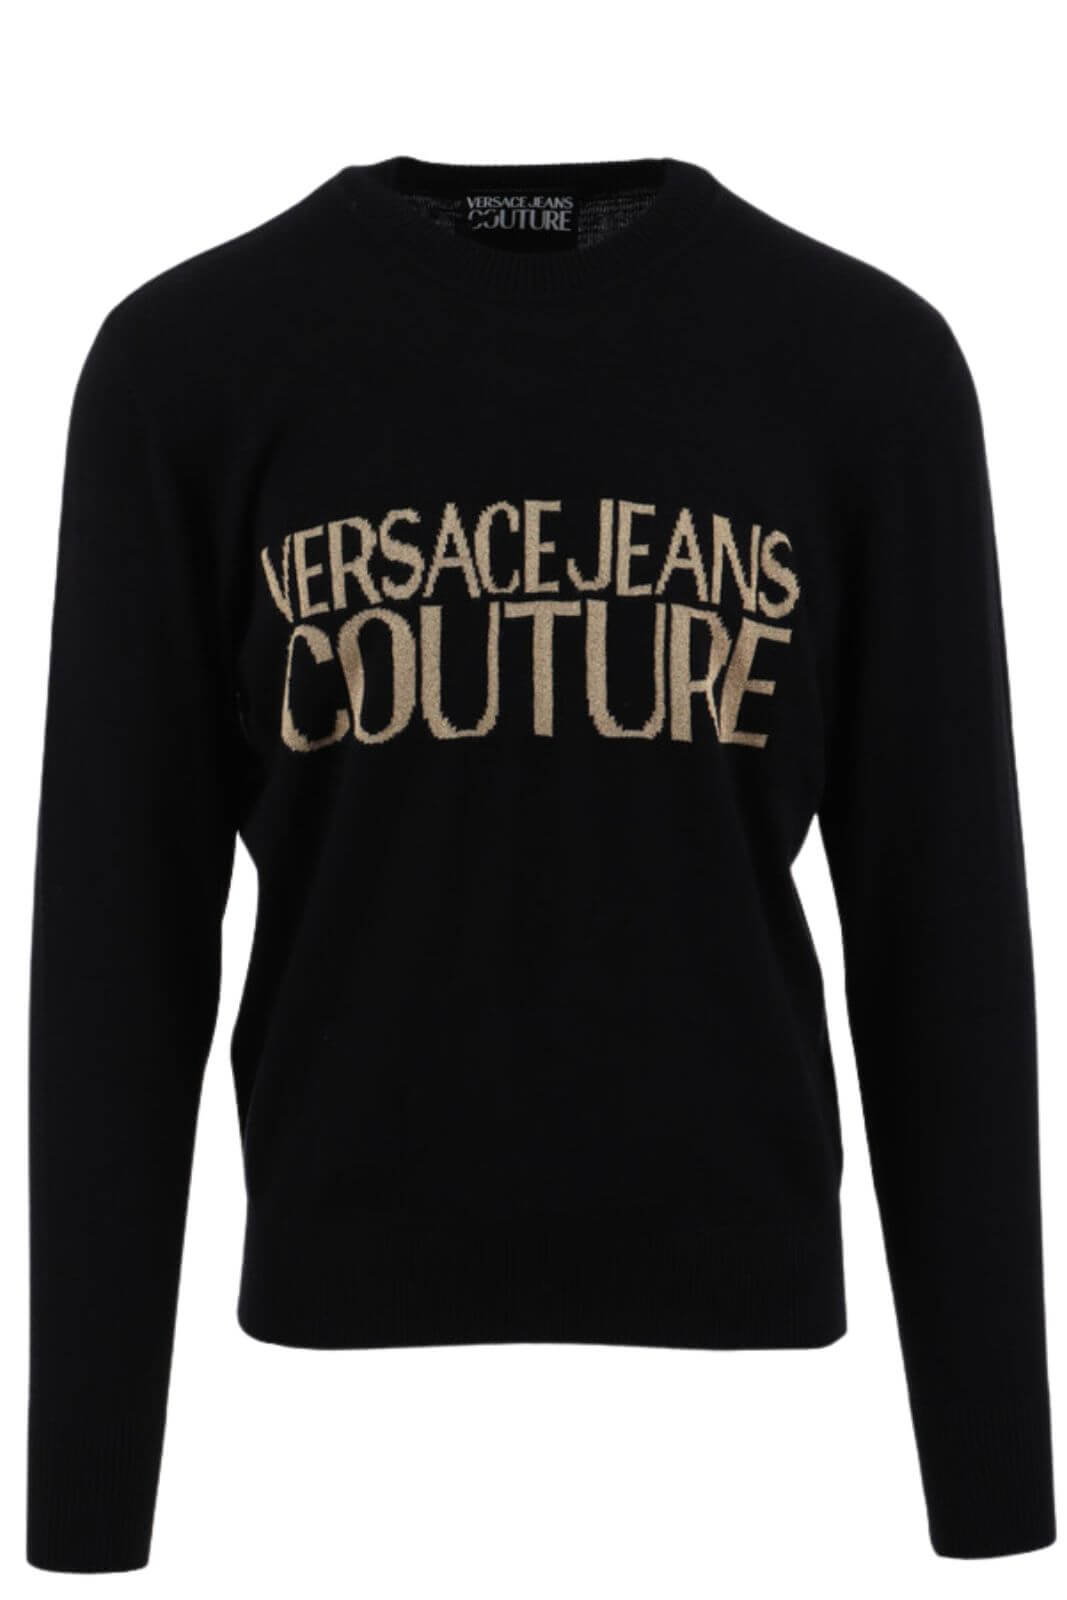 Versace Jeans Couture Maglia Uomo  misto cashmere